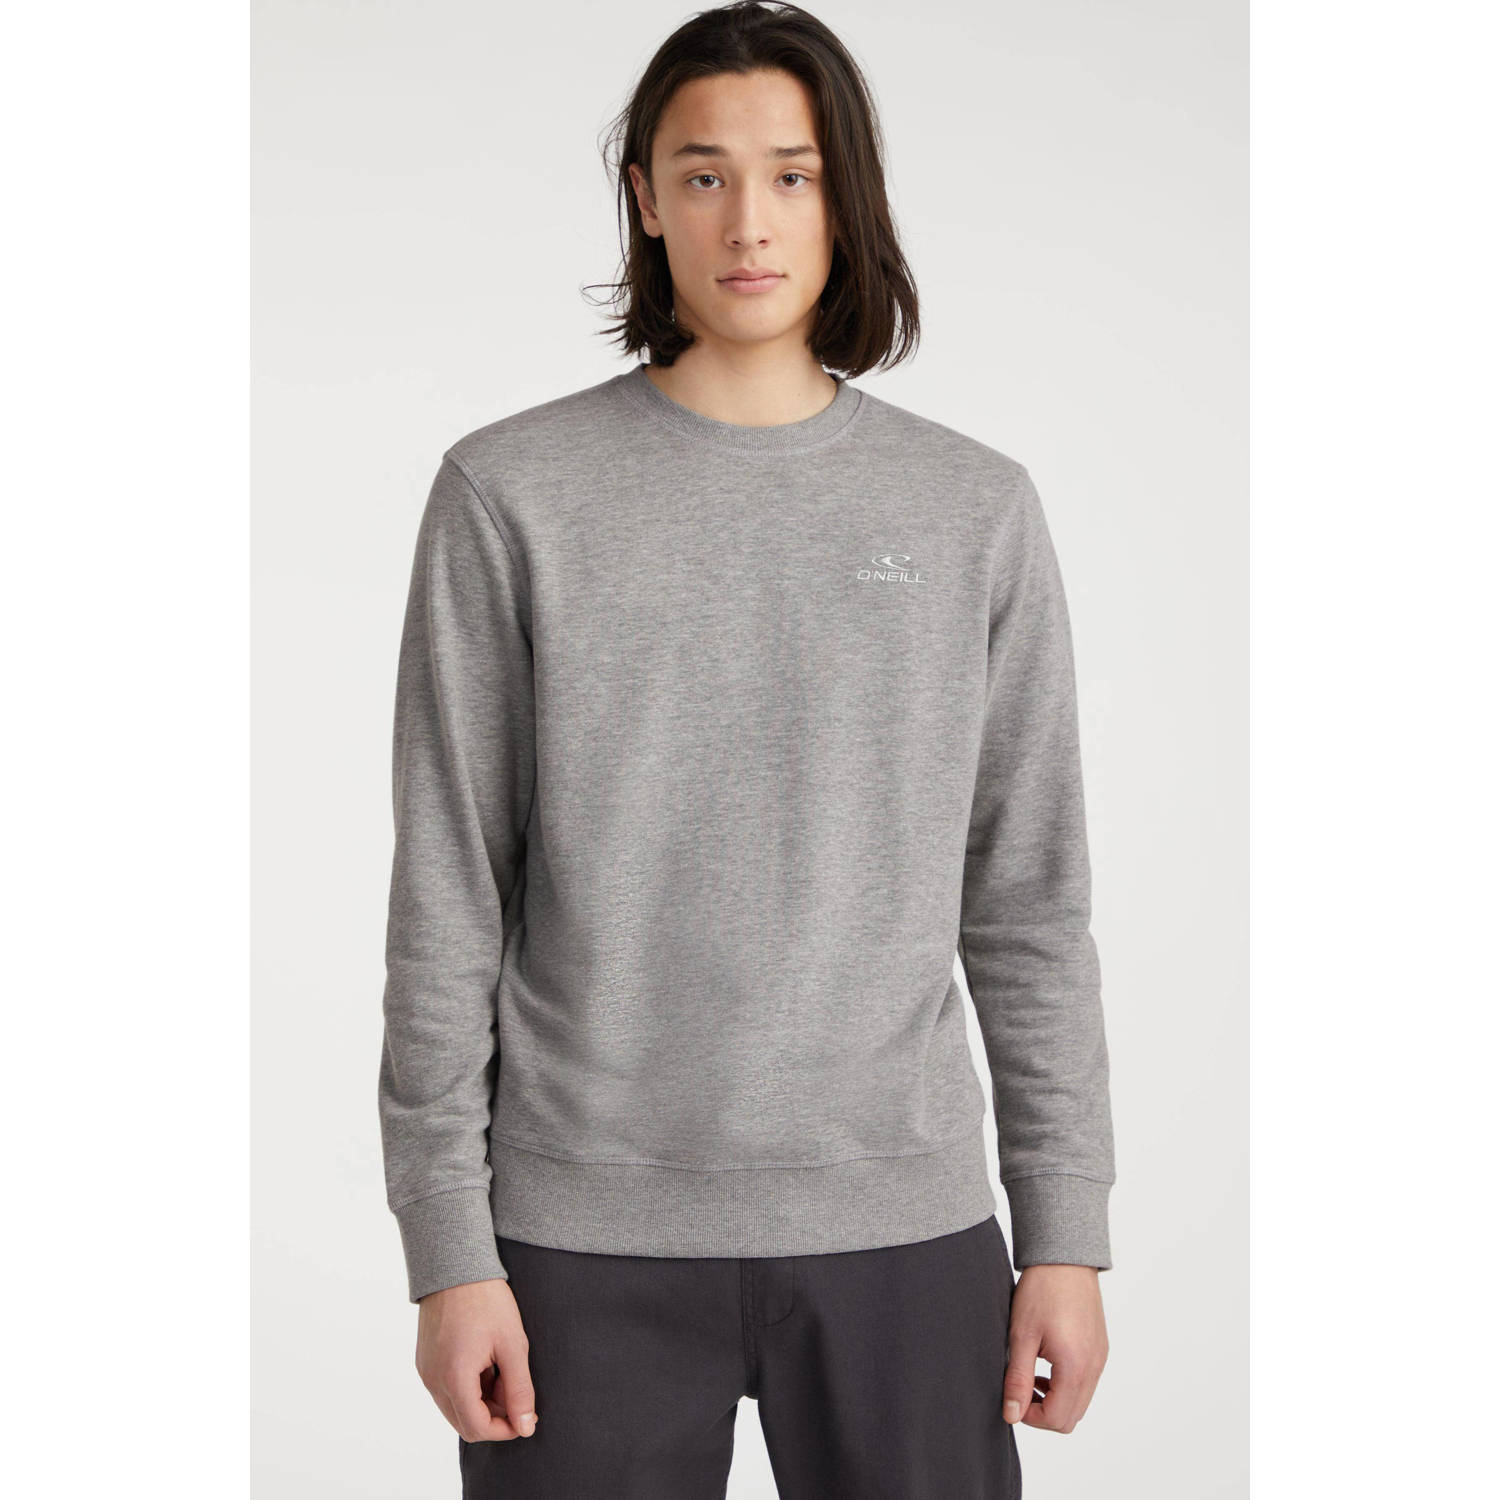 O'Neill sweater met logo grijs